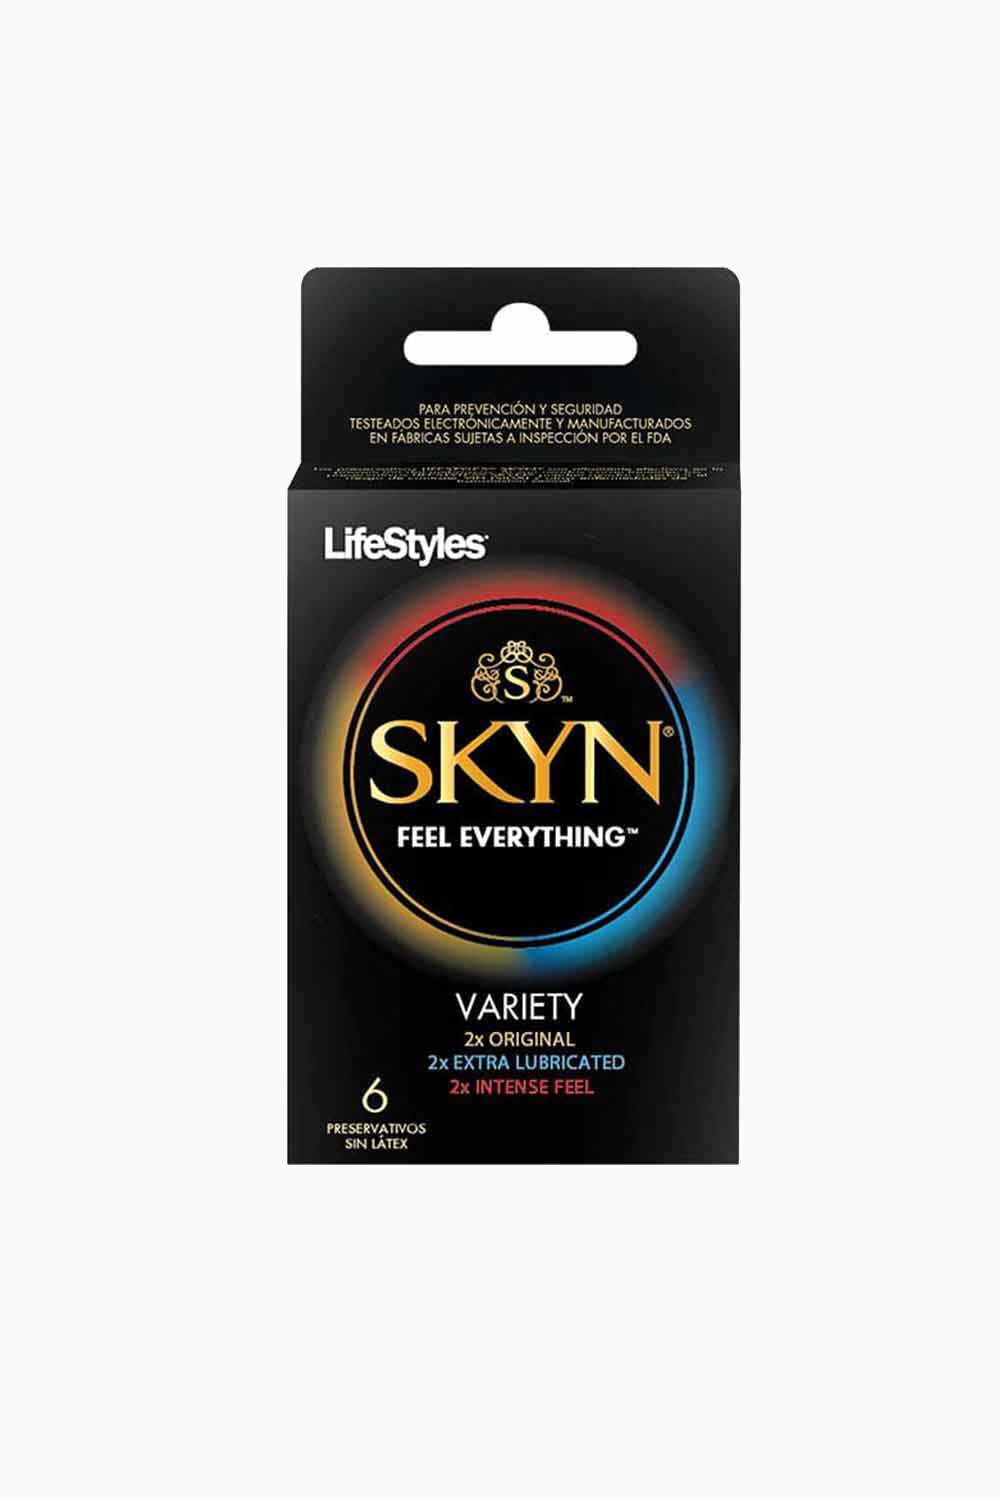 SKYN | Condones Lifestyles Pack Variedad x6